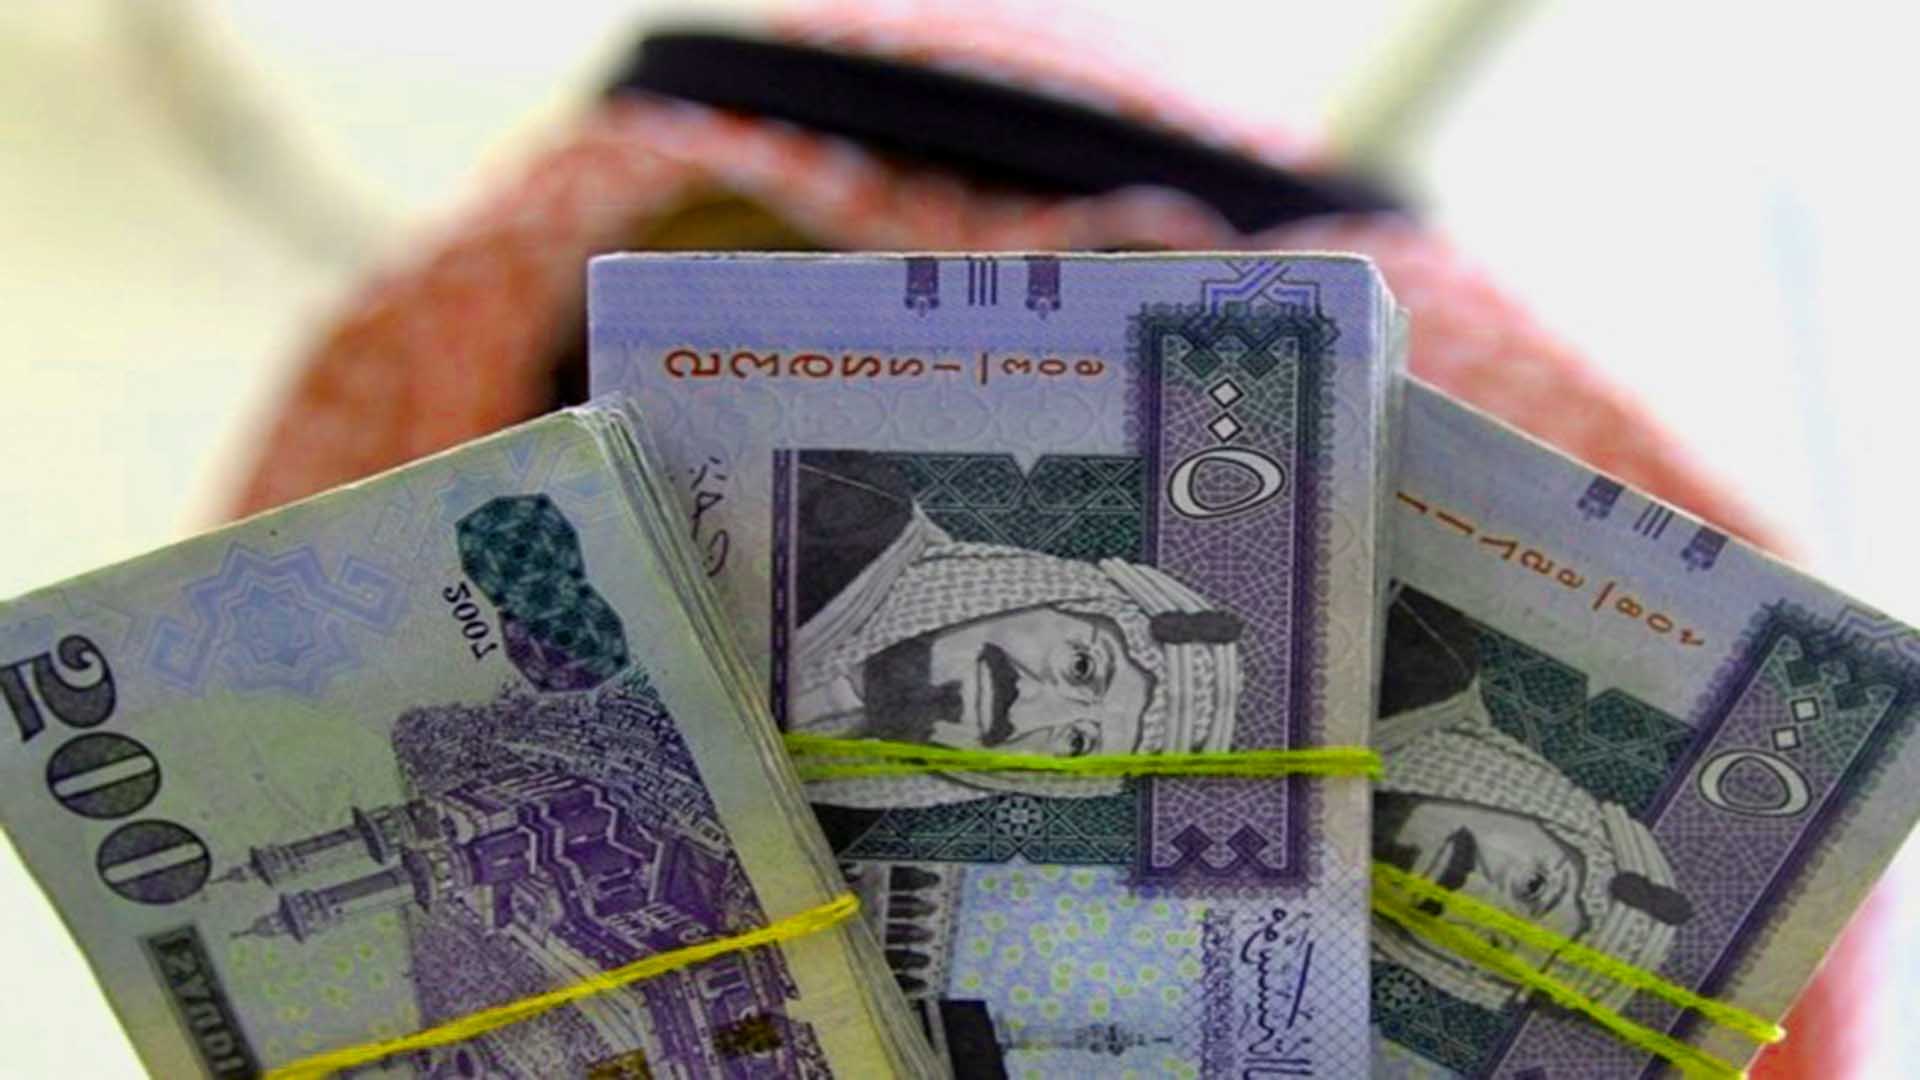 التمويل الشخصي من بنك الرياض للمنتجان بدون هامش ربح